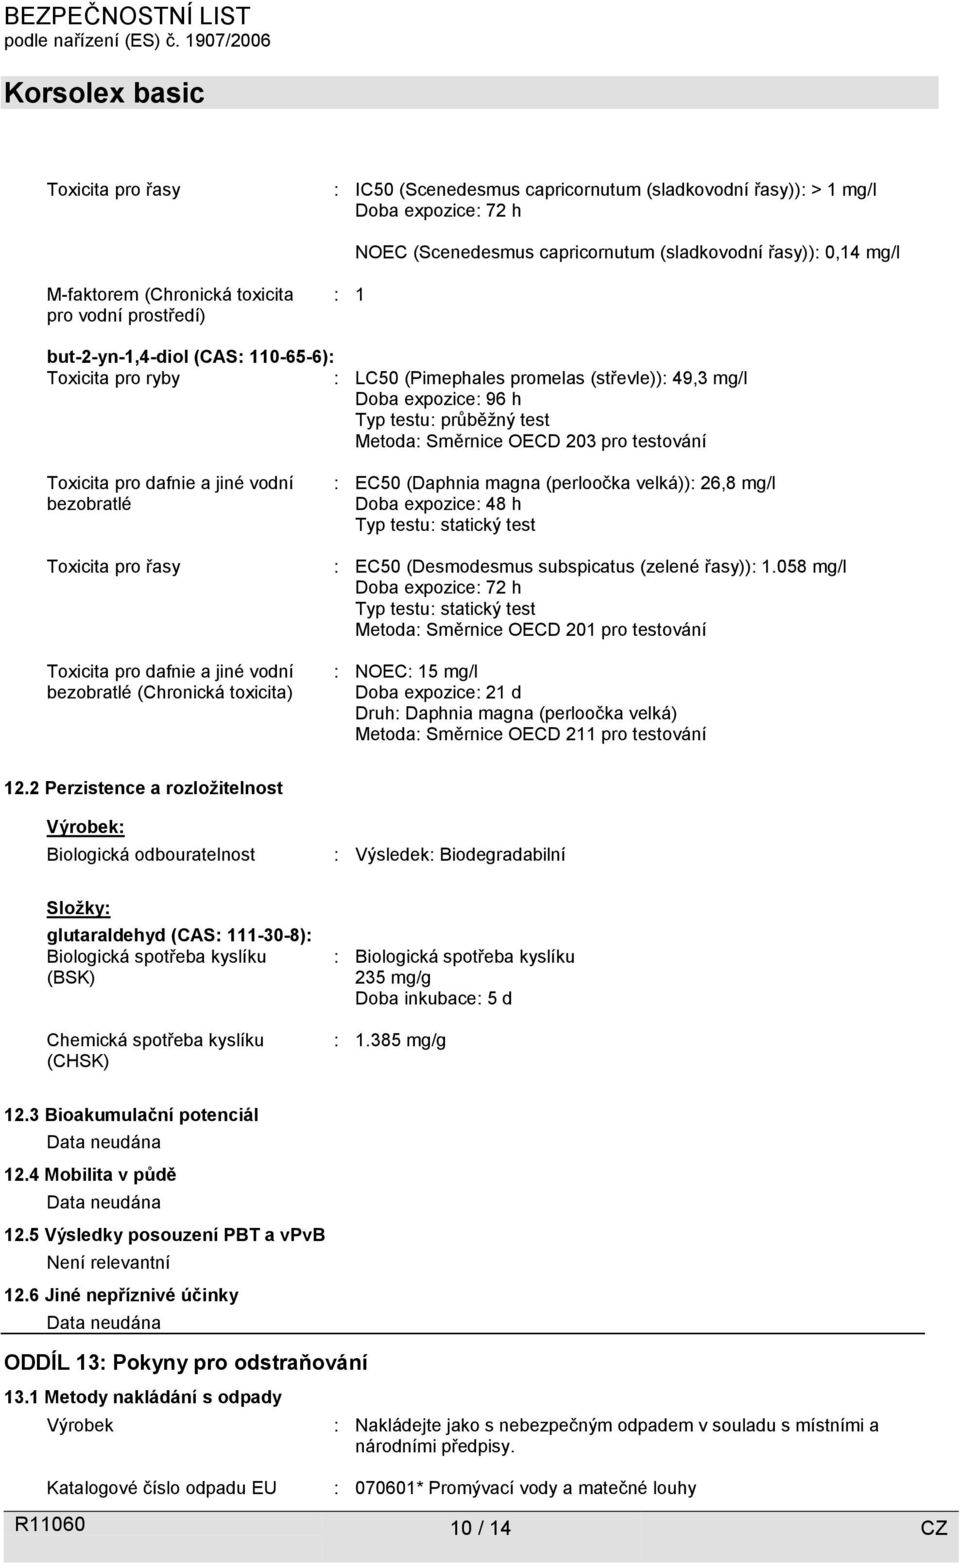 testování Toxicita pro dafnie a jiné vodní bezobratlé Toxicita pro řasy Toxicita pro dafnie a jiné vodní bezobratlé (Chronická toxicita) : EC50 (Daphnia magna (perloočka velká)): 26,8 mg/l Doba